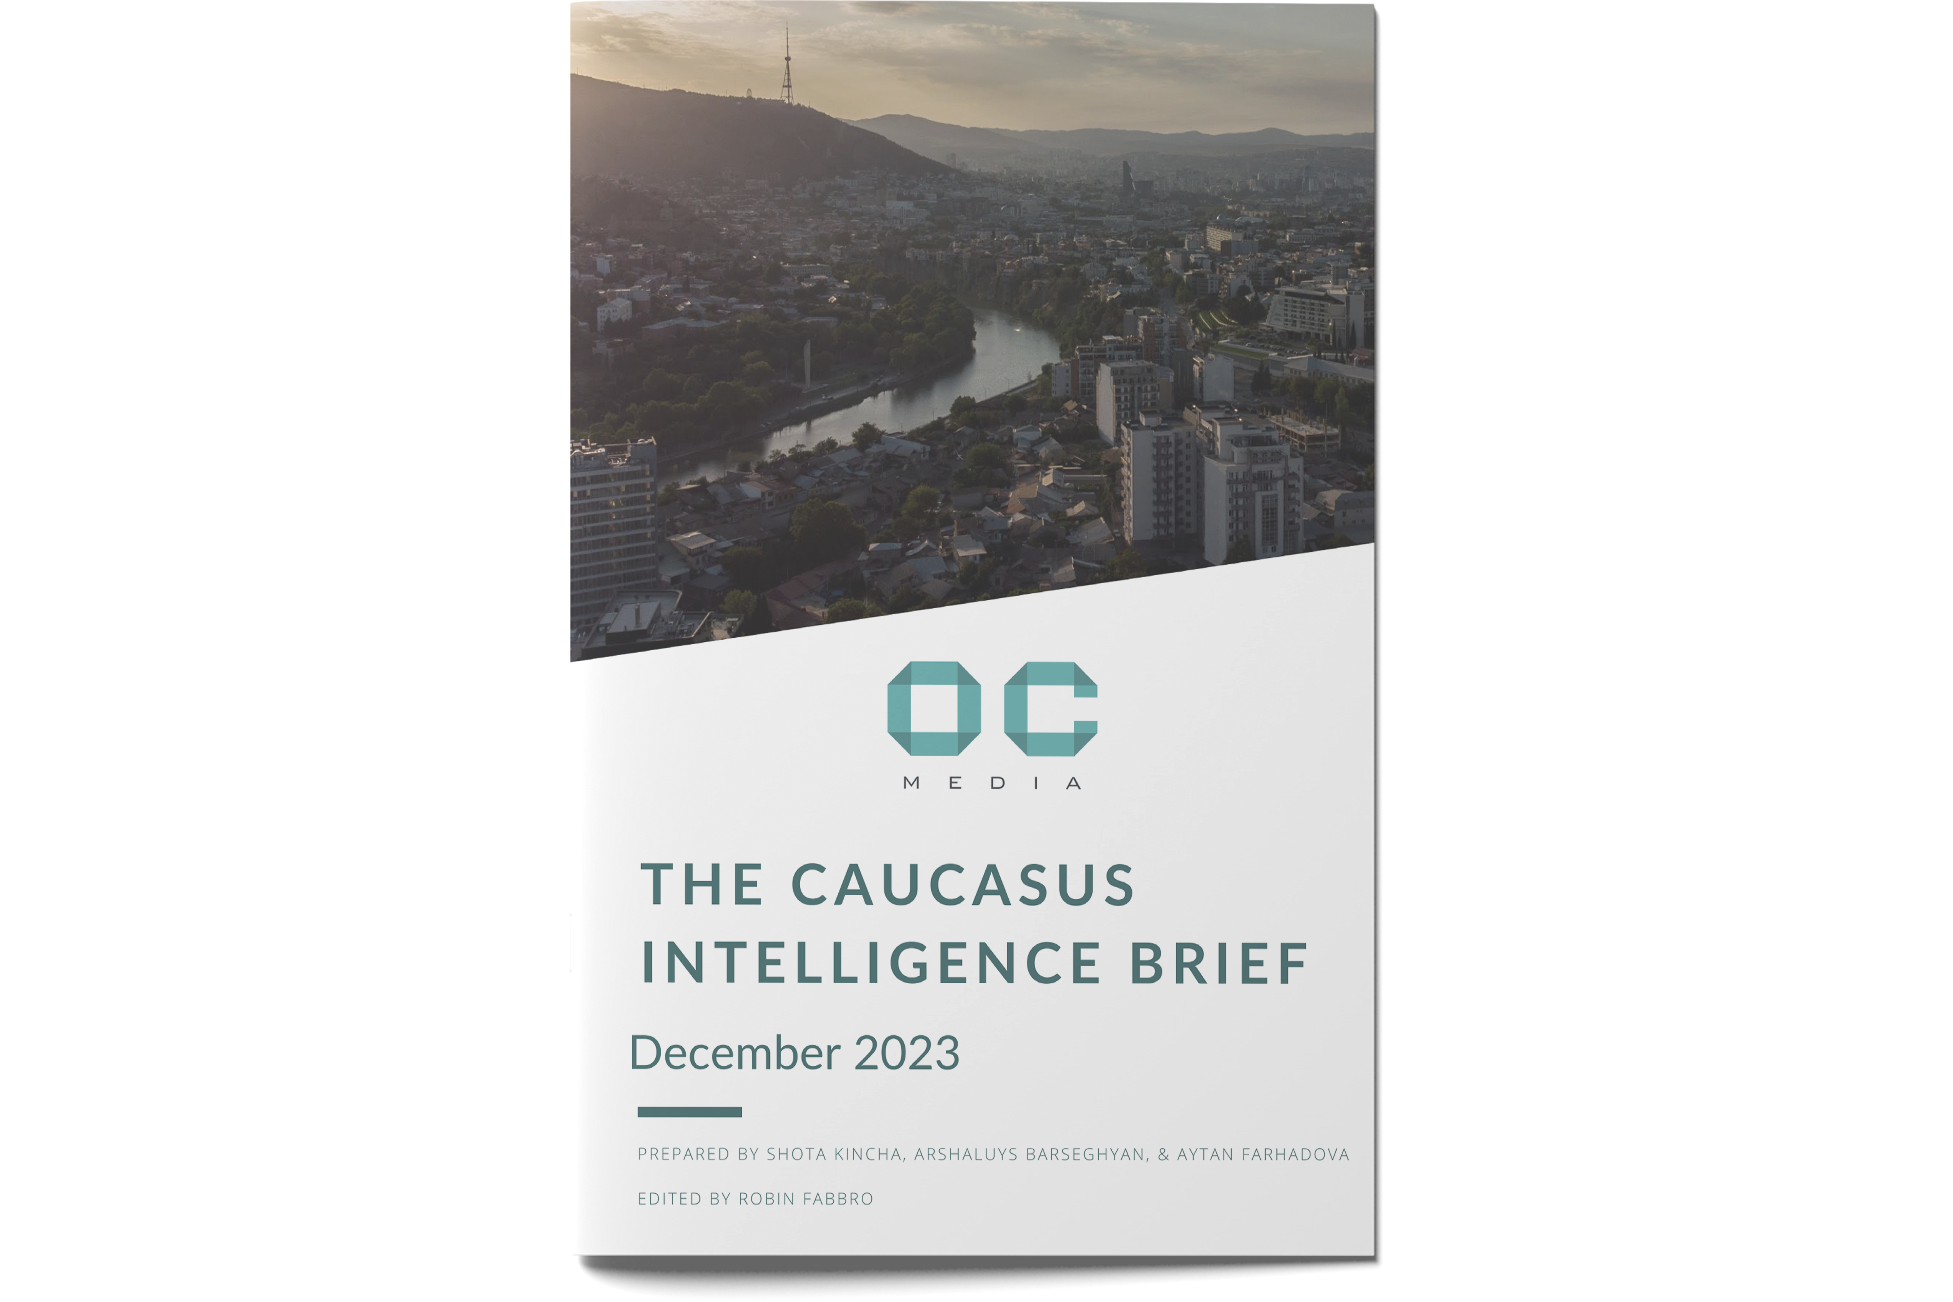 The Caucasus Intelligence Briefing